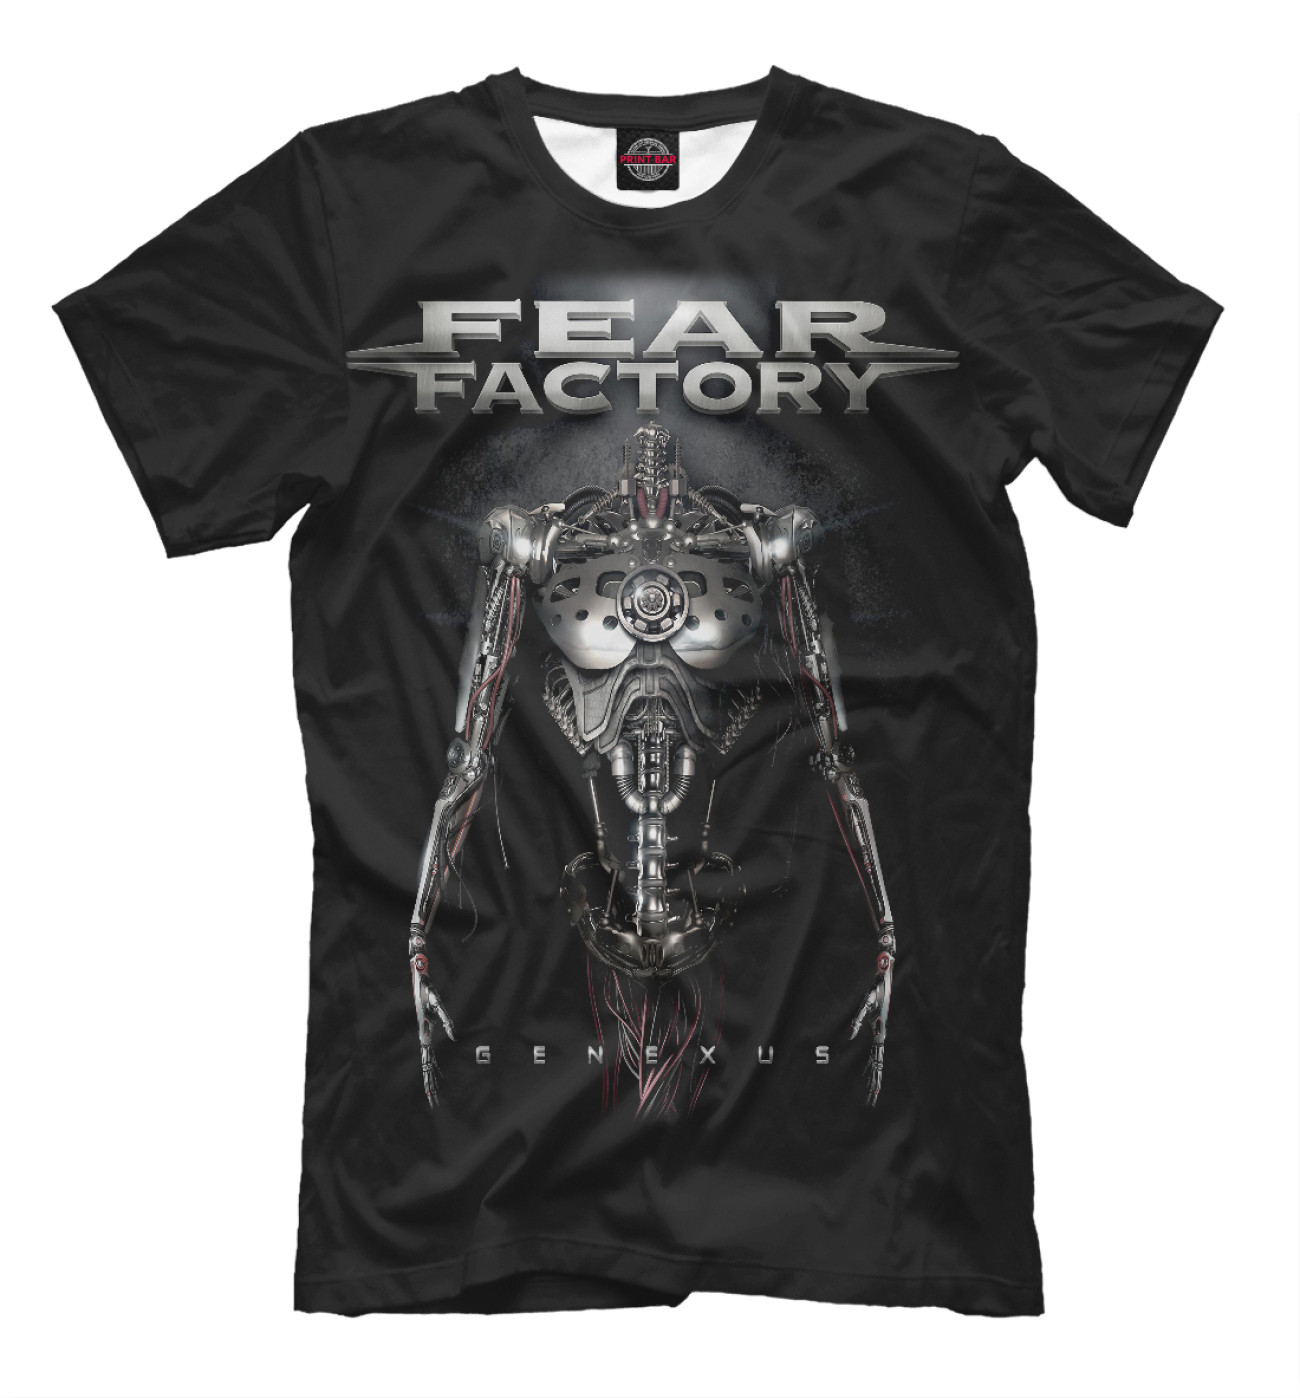 Мужская Футболка Fear Factory, артикул: FFC-481262-fut-2